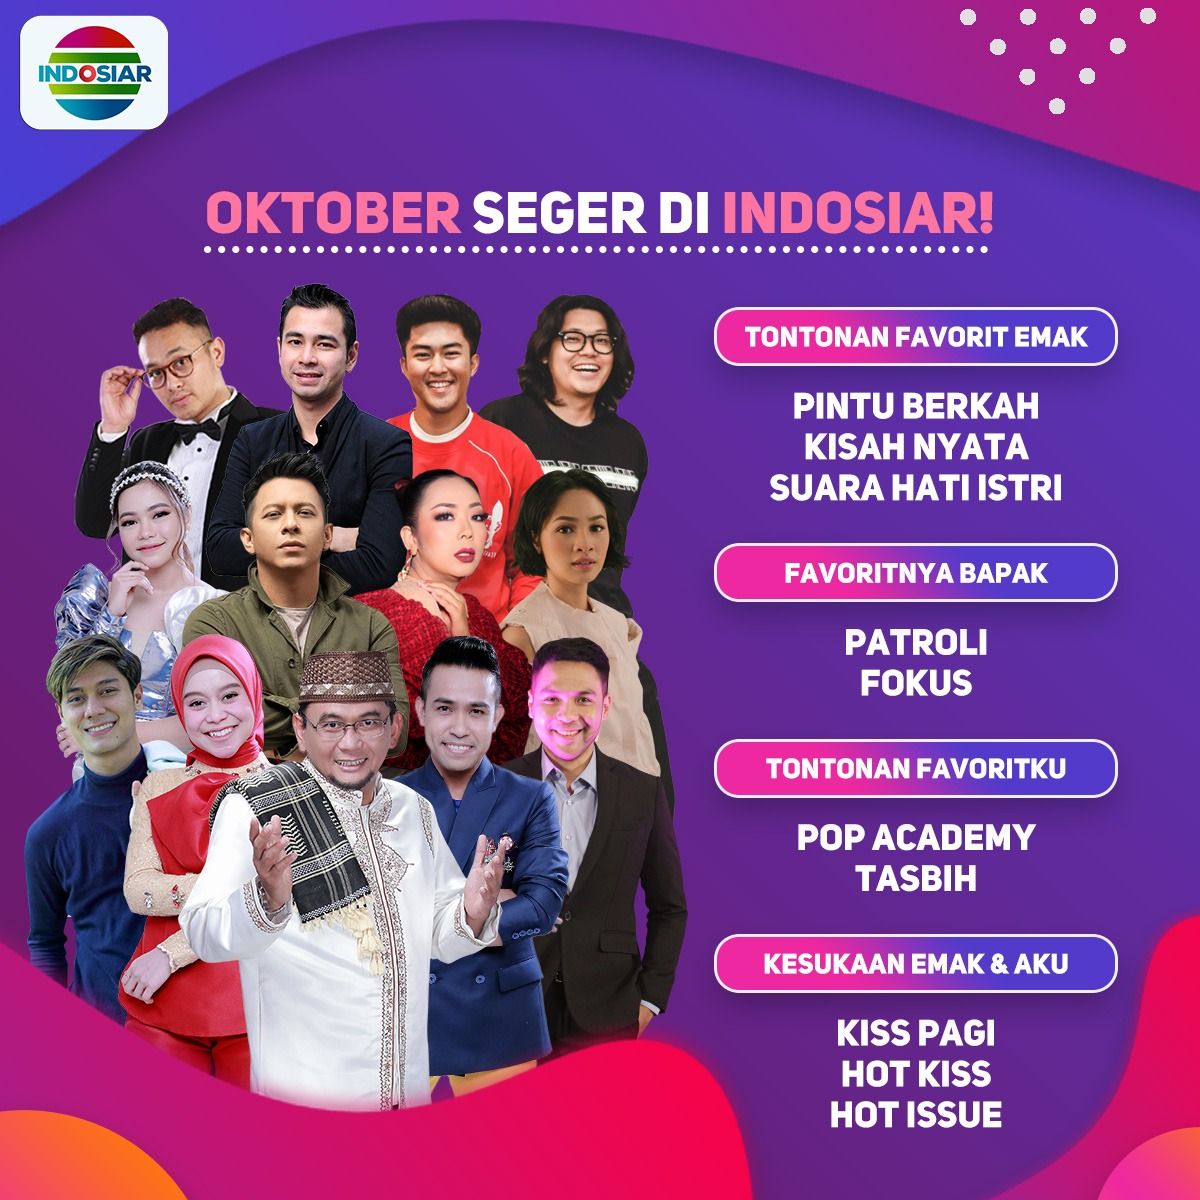 Jadwal Acara Indosiar Hari Ini 18 Oktober 2020, Ada Drama Musikal: KAWAL SAMPAI HALAL - Berita DIY